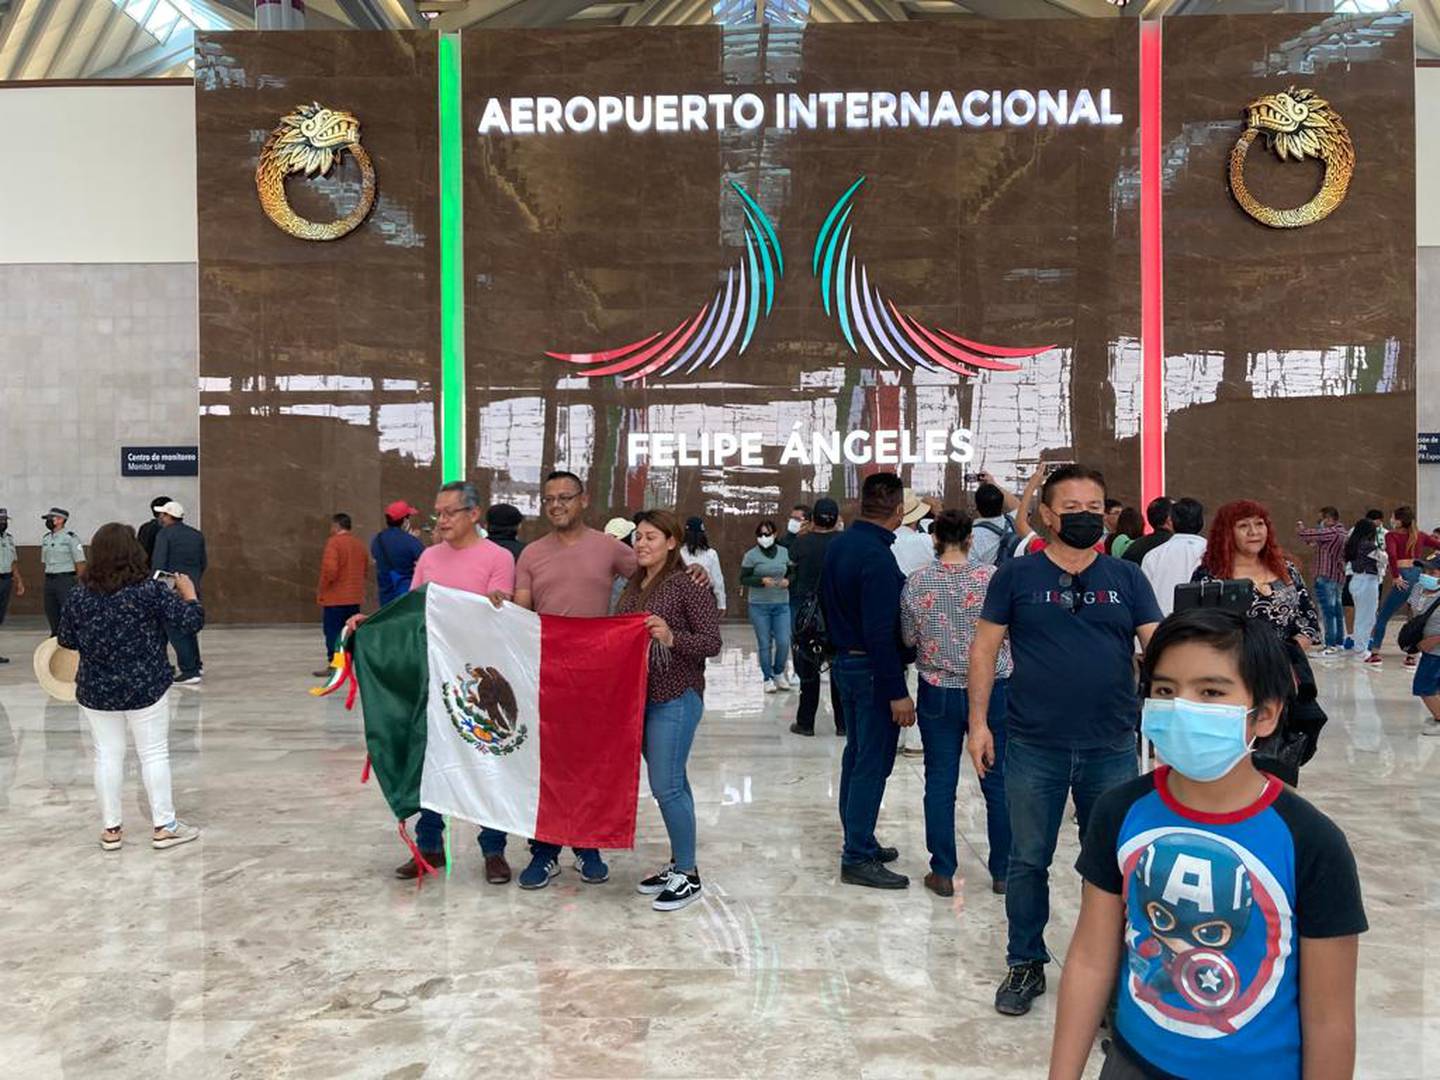 A finales de la semana pasada, el presidente de México presentó a la Cámara de Diputados una iniciativa para modificar la legislación en materia aérea. Una de las propuestas considera permitir el cabotaje, que permitiría a aerolíneas internacionales trasladar pasajeros entre ciudades en México.